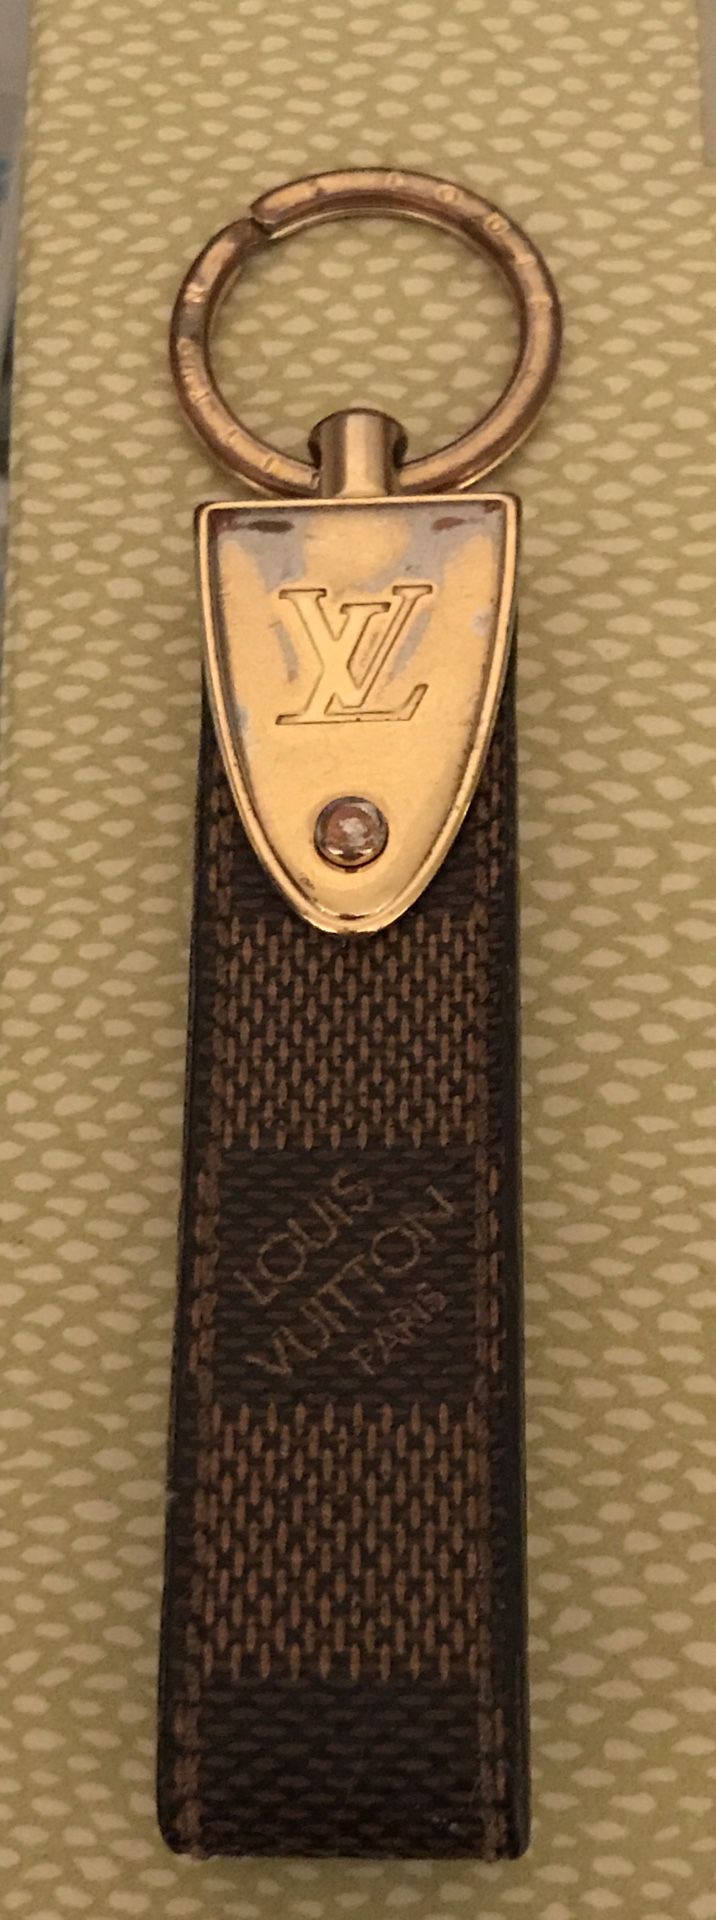 LV Louis Vuitton Key Ring Logo Leather Key Ring